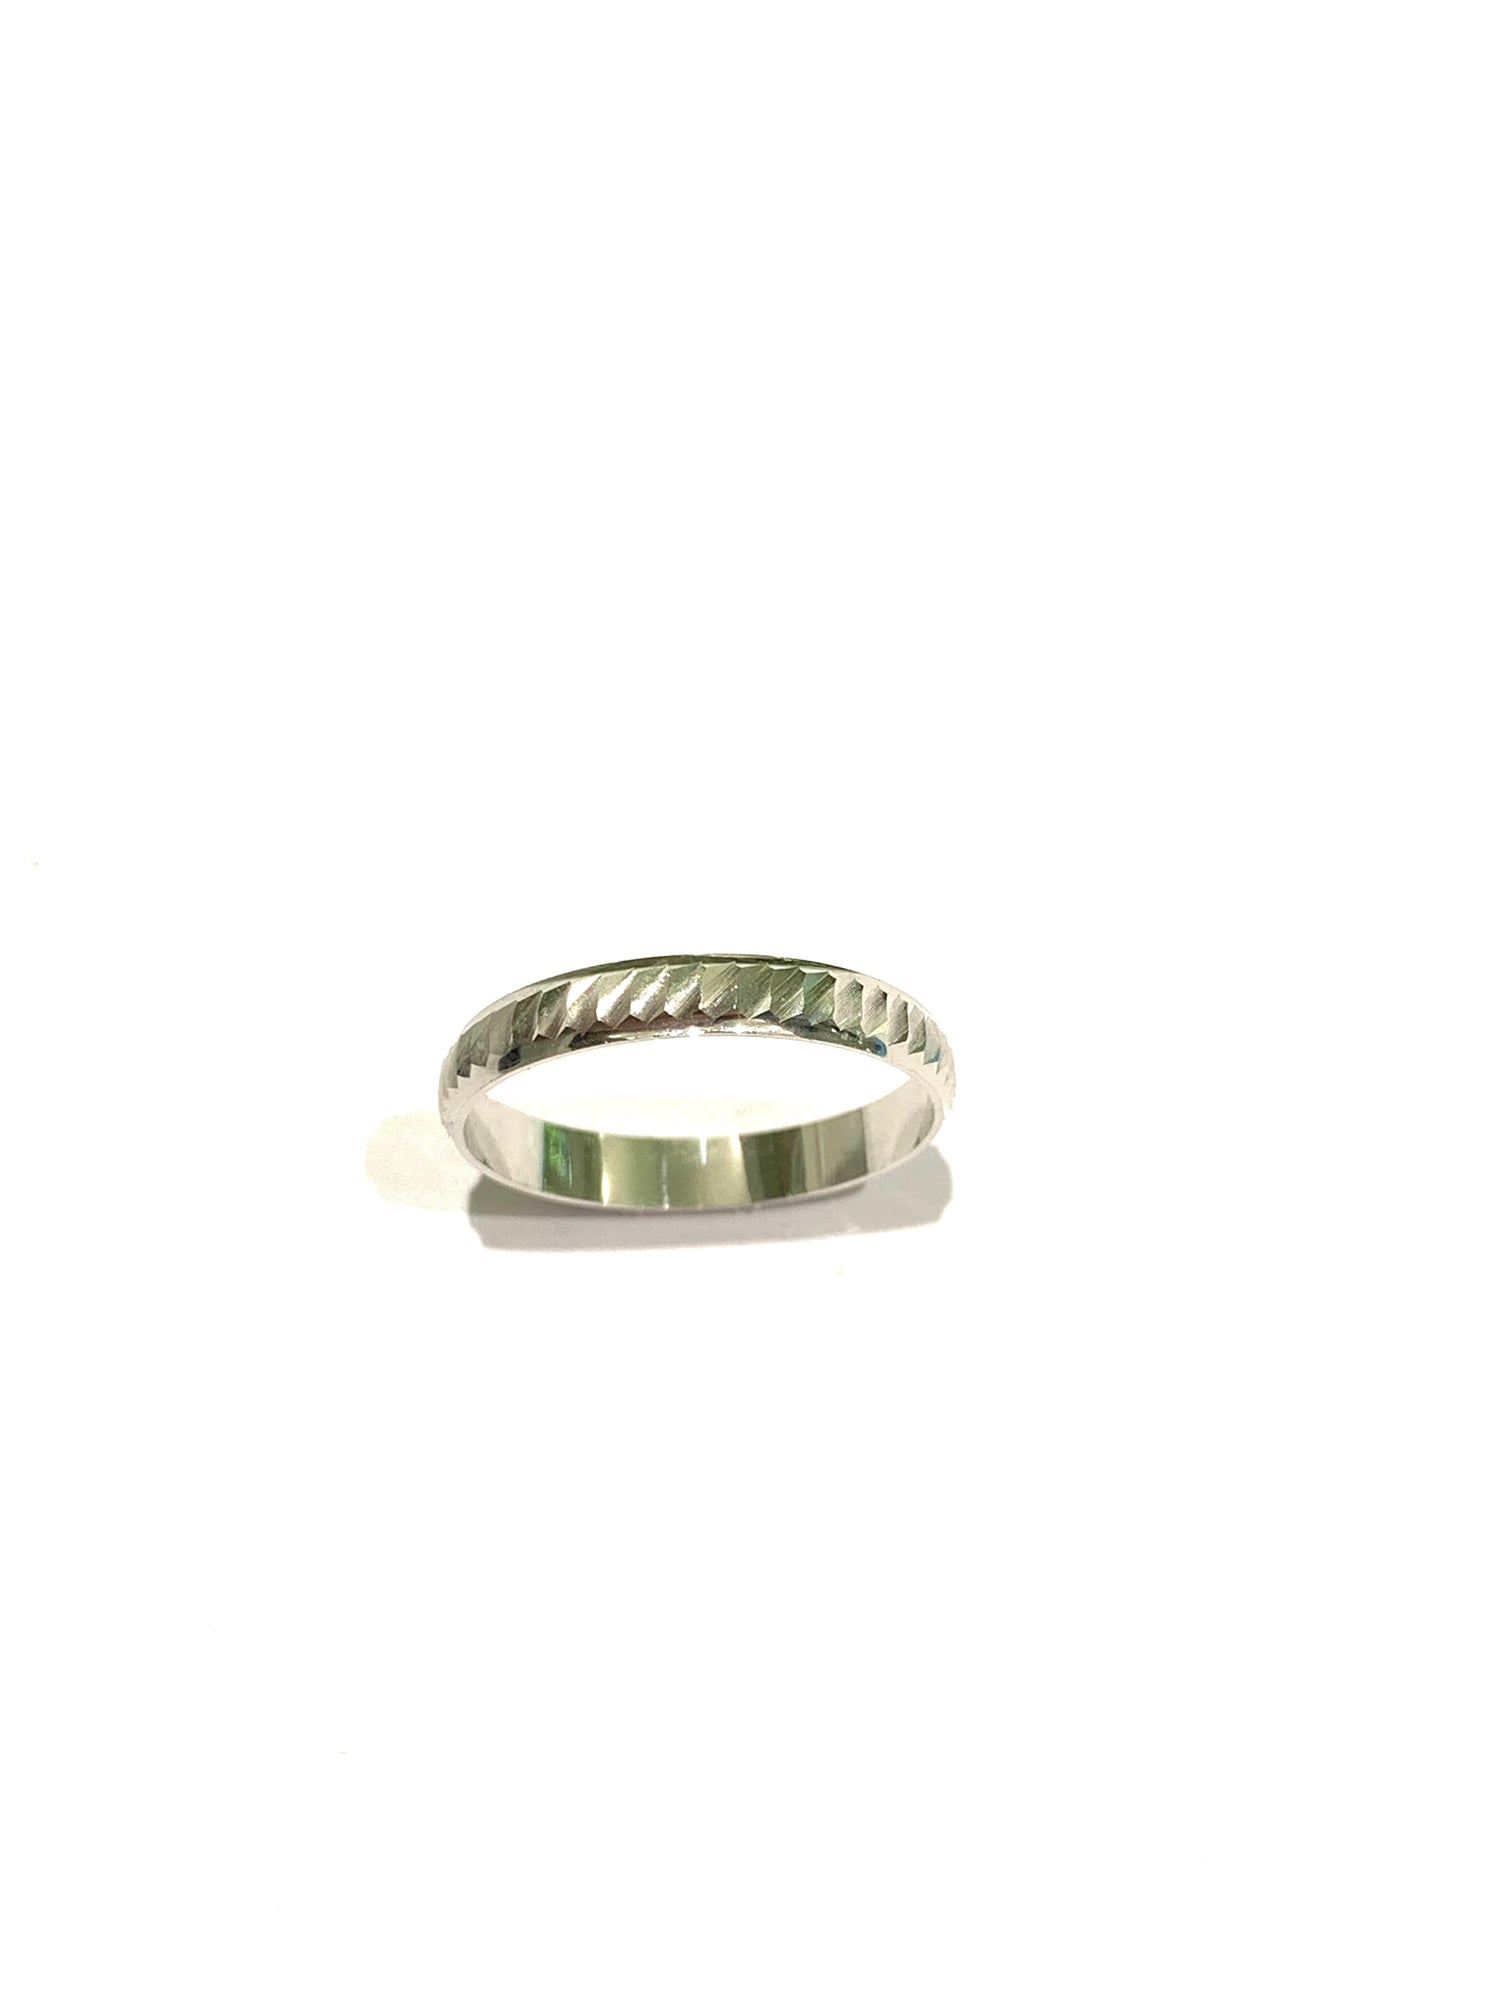 Anello fedina in oro bianco 18kt con disegni satinati.  Dimensione parte superiore anello 0,3 cm.  Disponibili più misure.